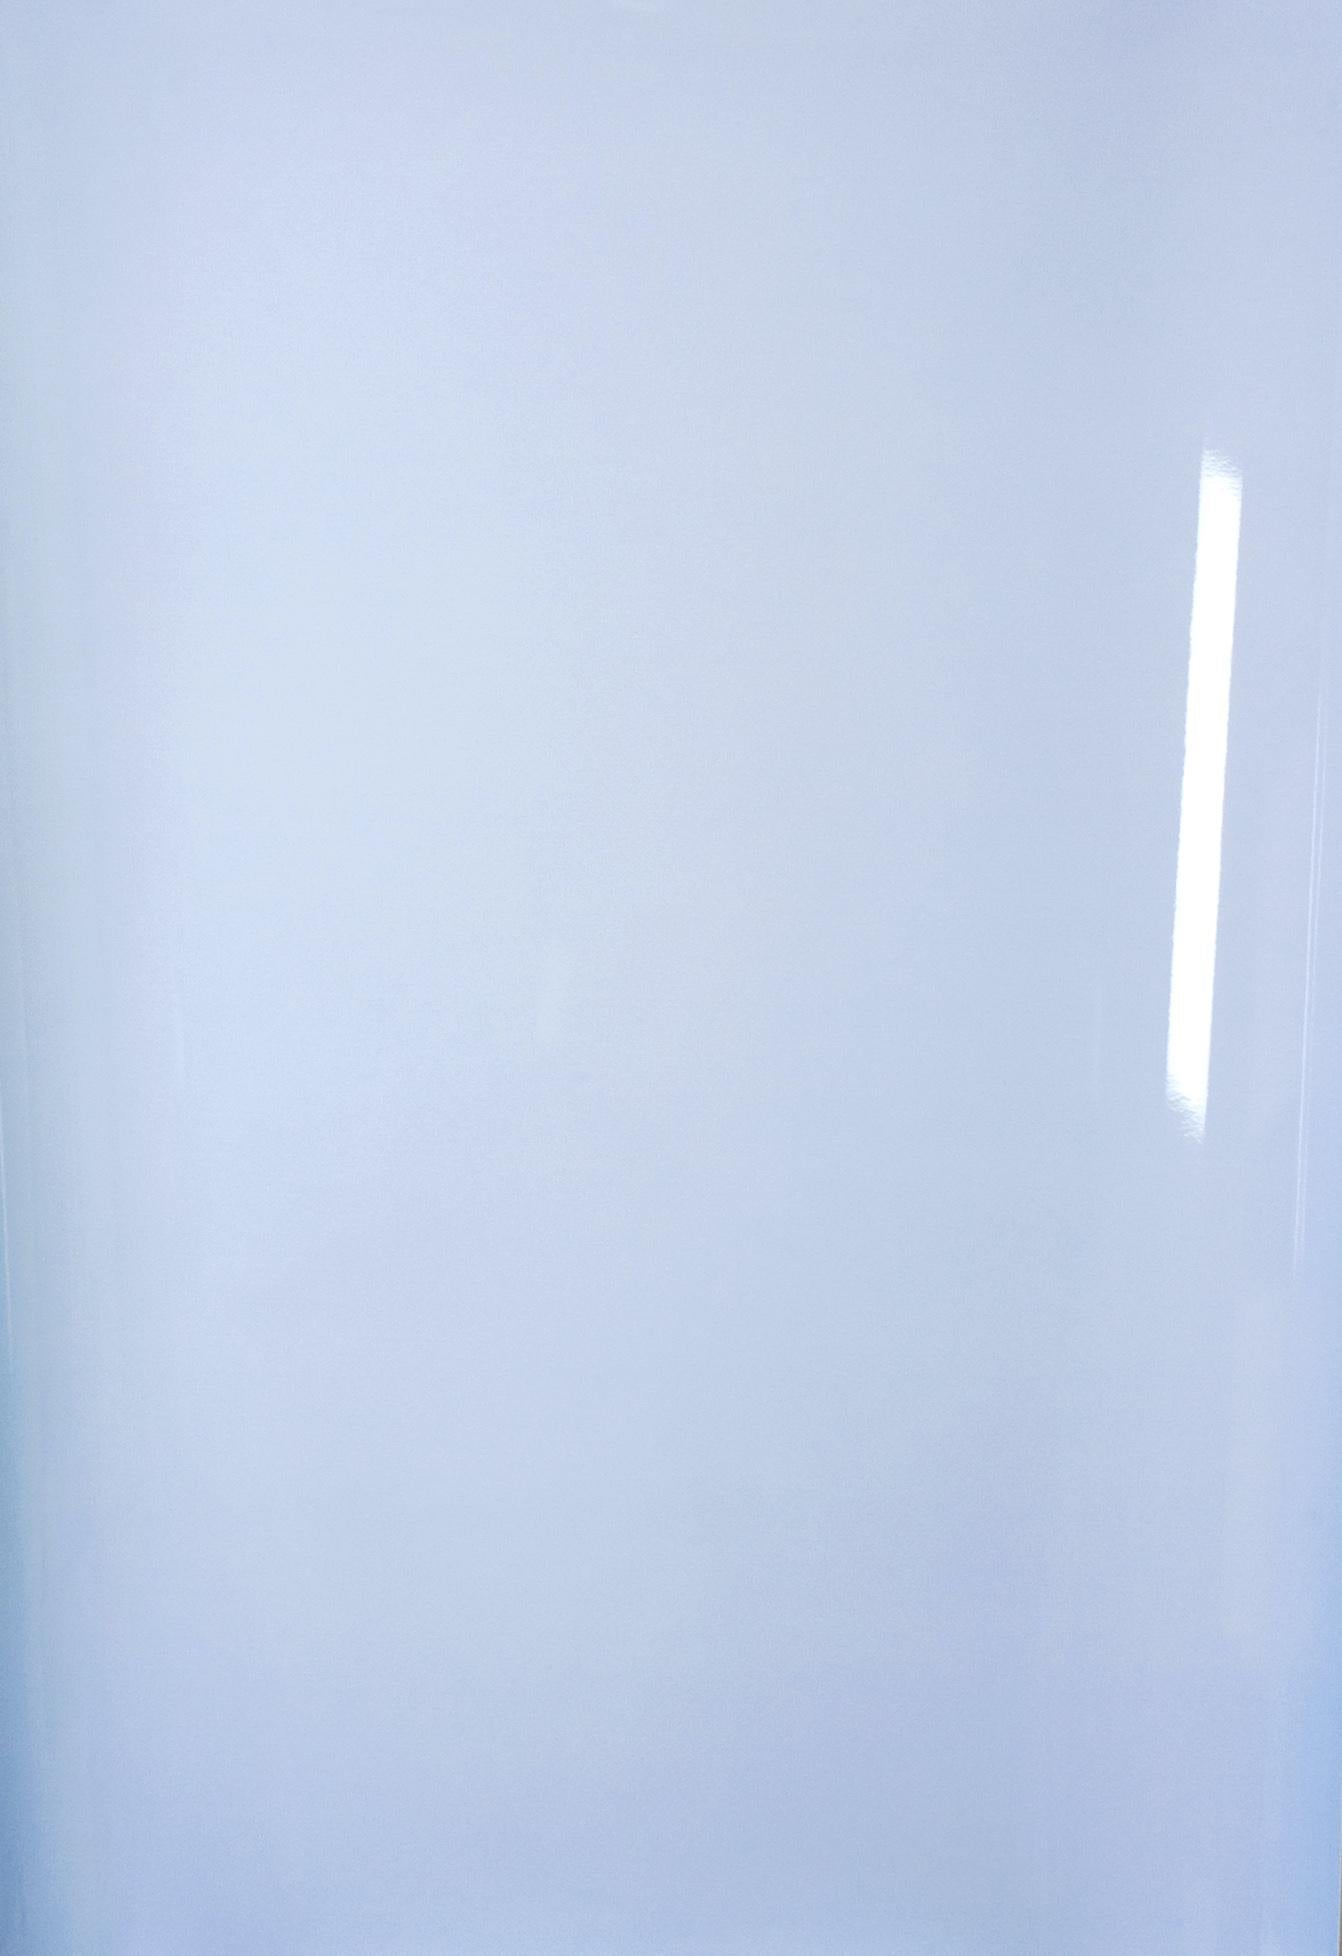 Color Photograph Ulrike Königshofer - Ombres sur papier, n° 1 - Photographie abstraite contemporaine en camaïeu de bleus